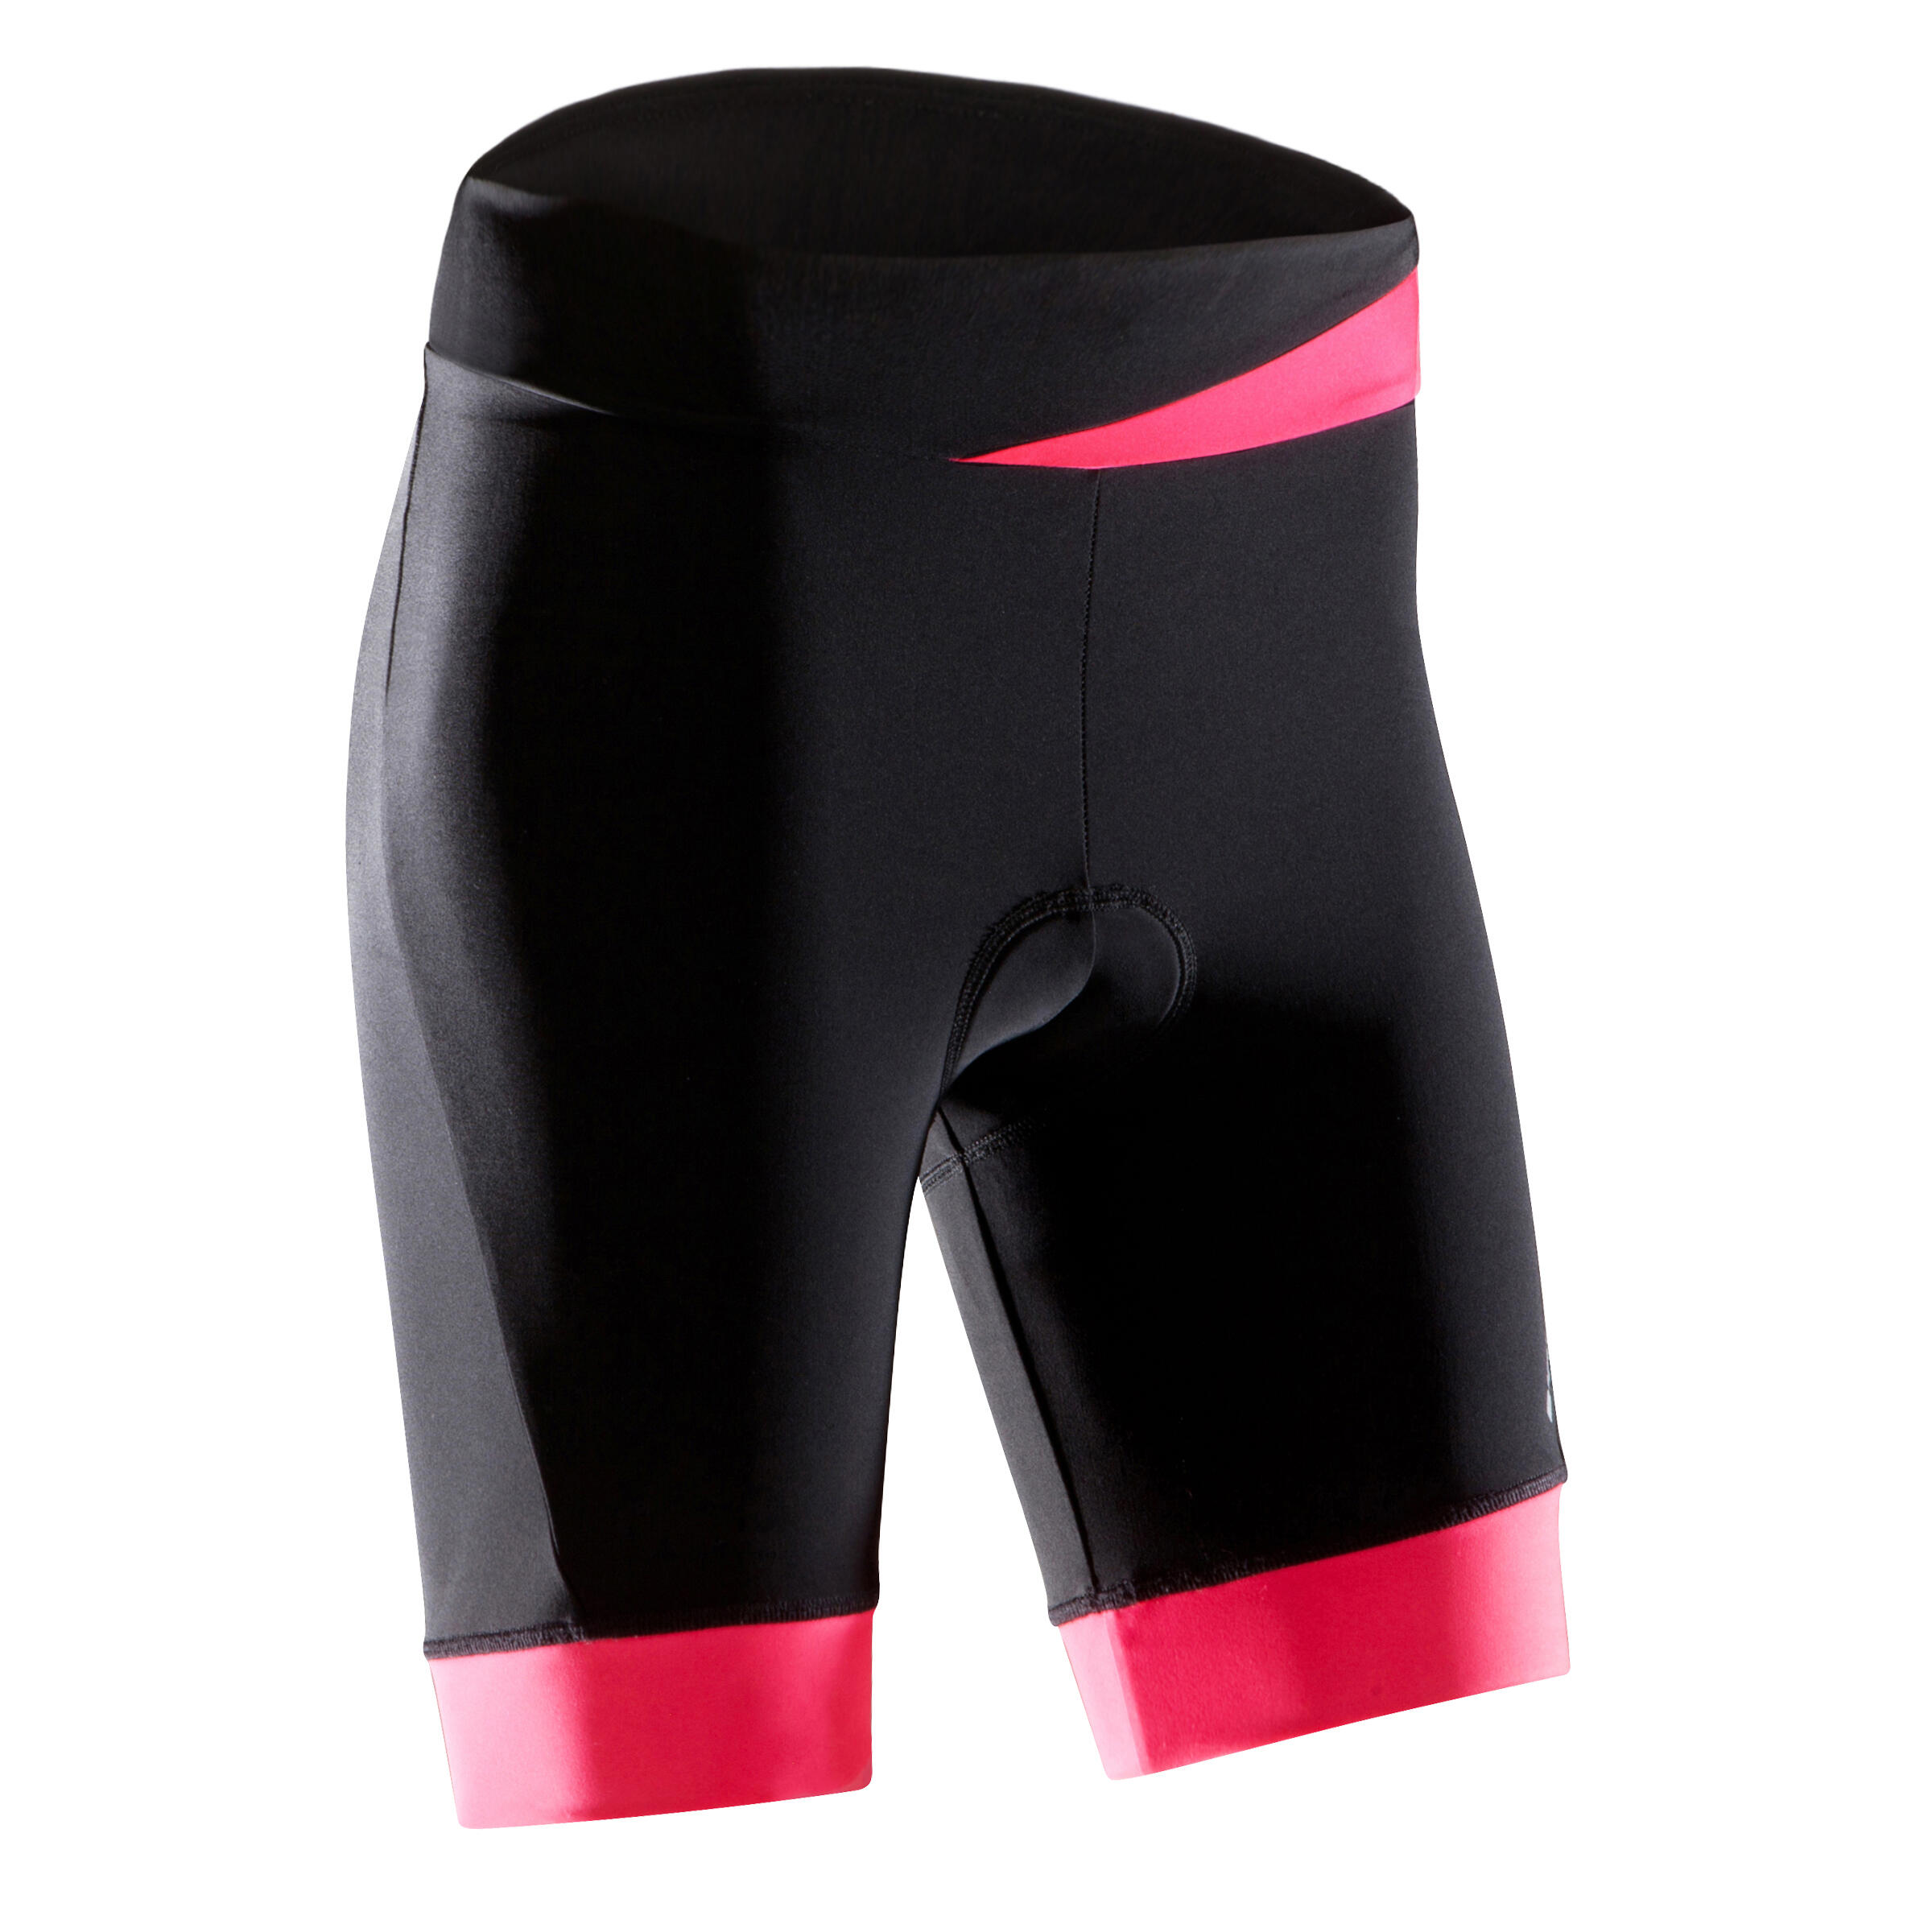 decathlon bib shorts